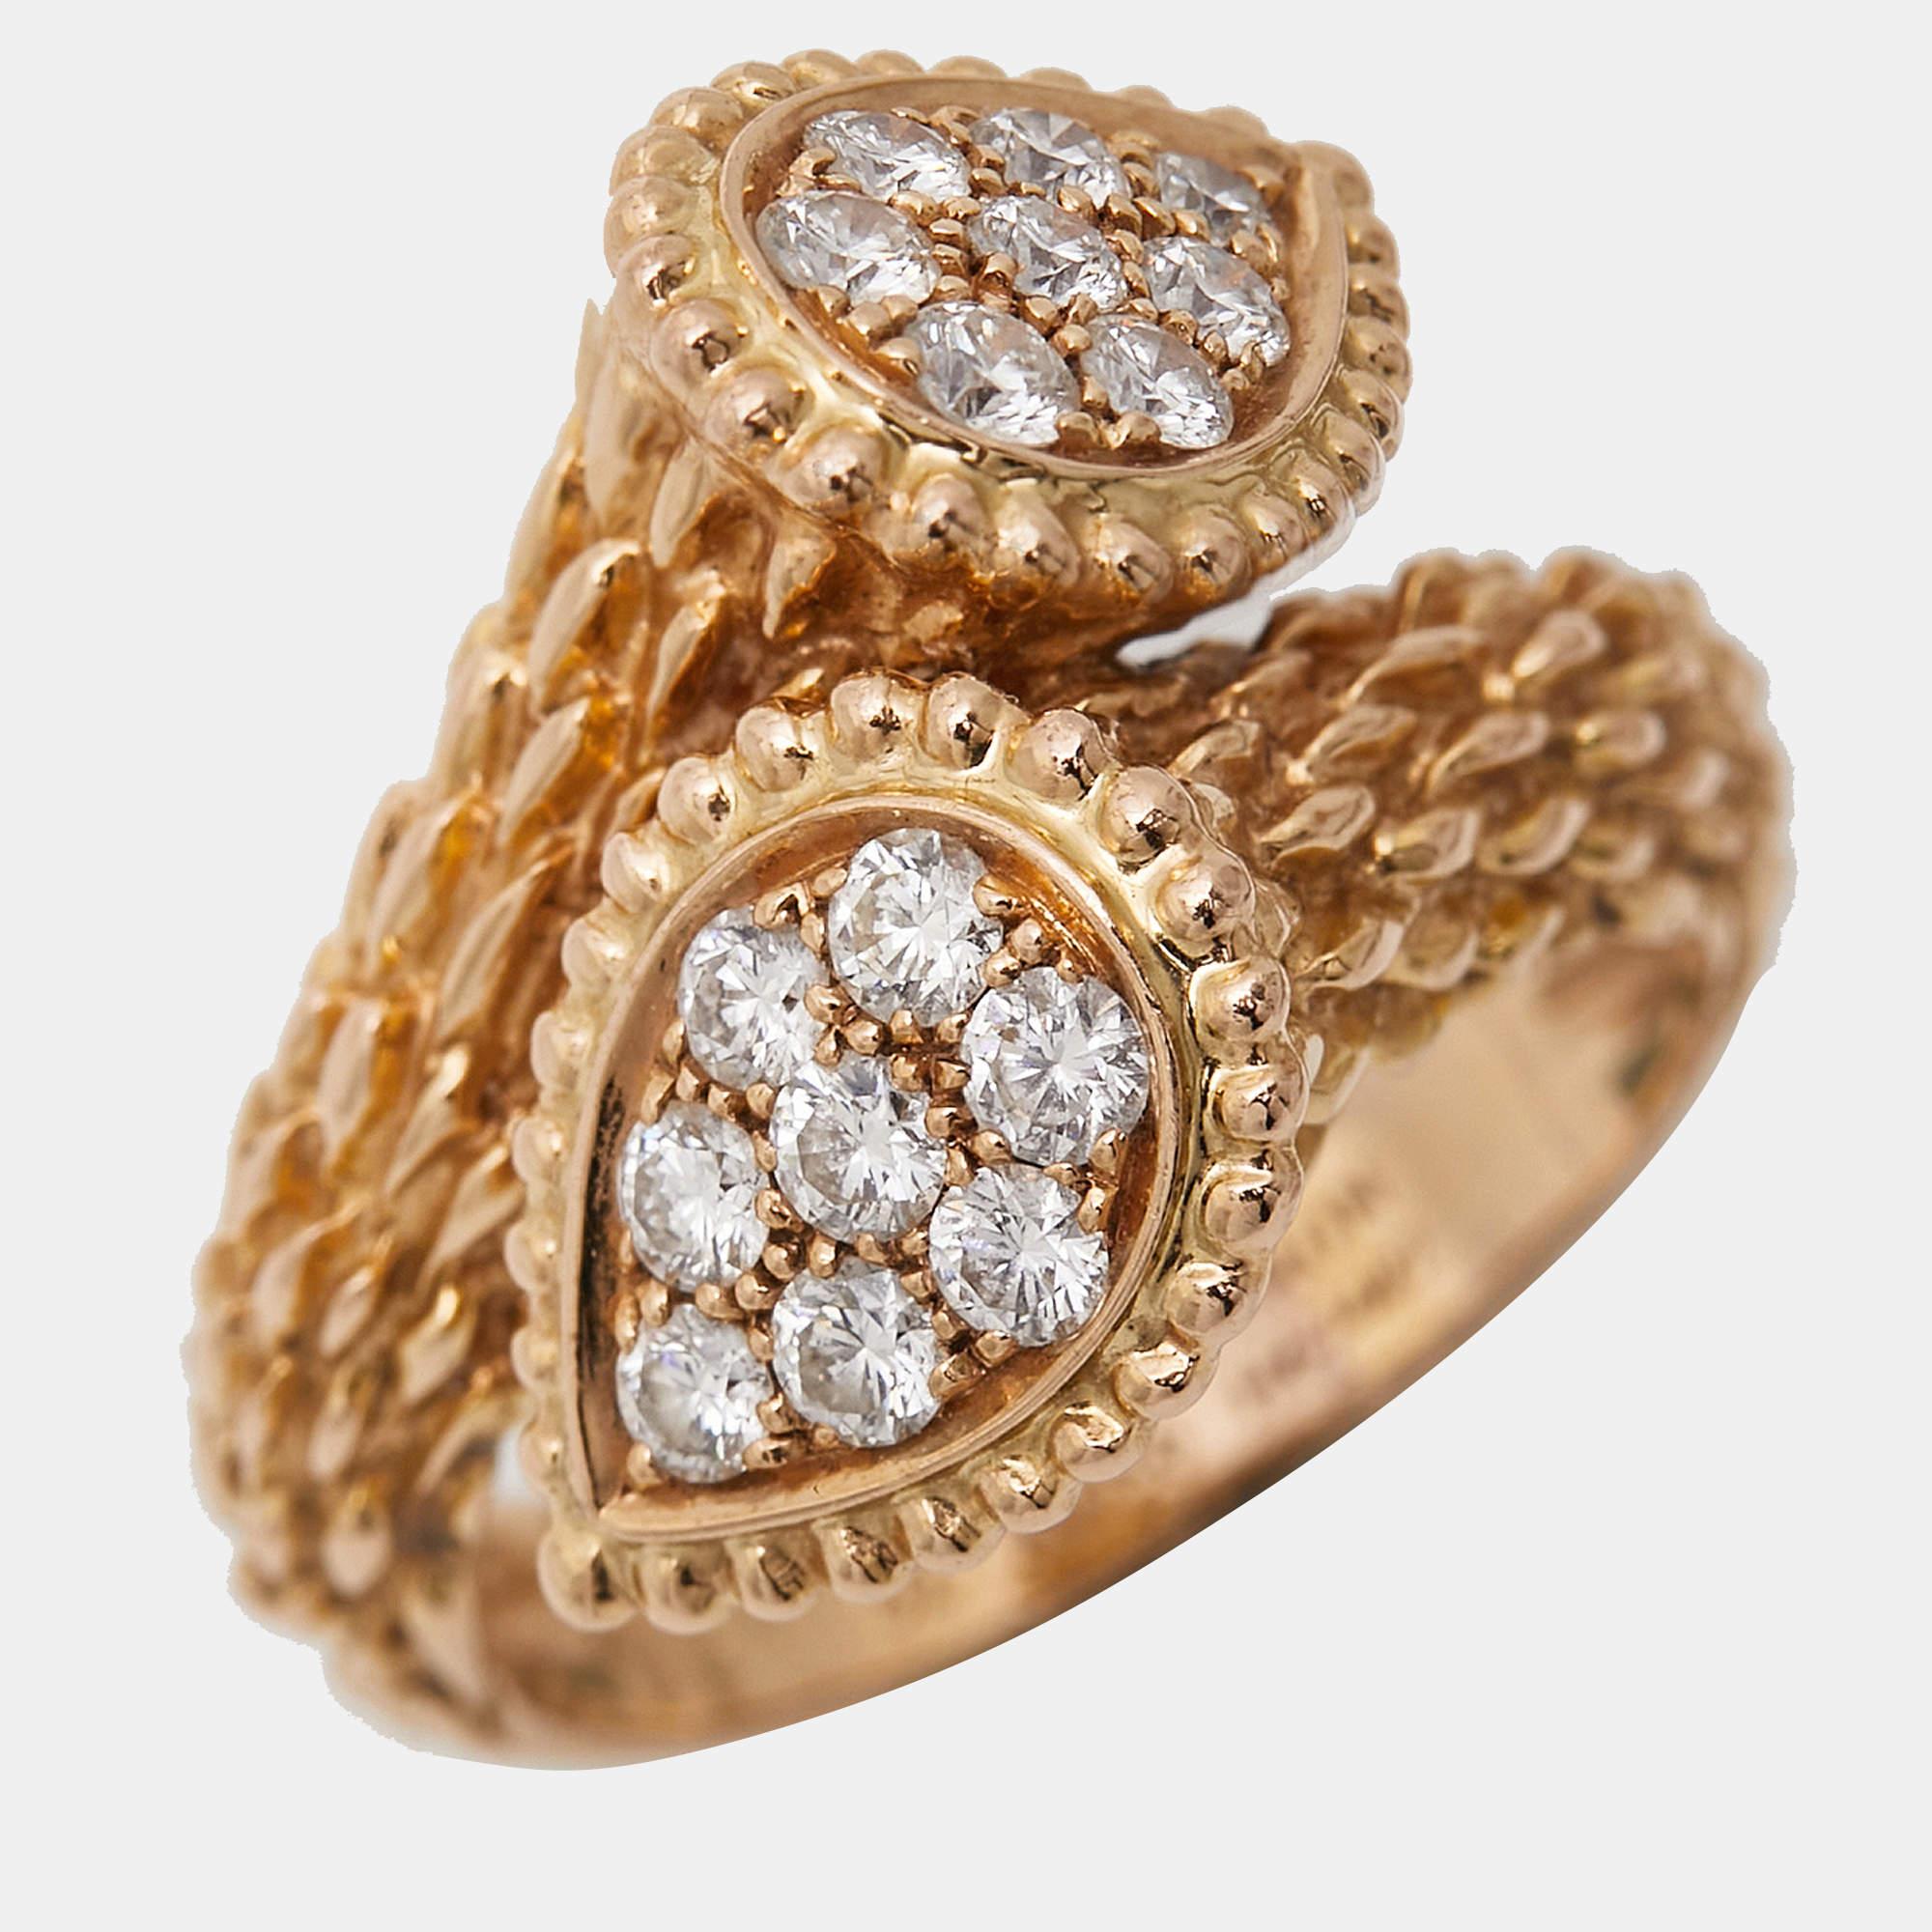 Uncut Boucheron Serpent Boheme Toi Et Moi S Motif Diamond 18k Yellow Gold Ring Size 52